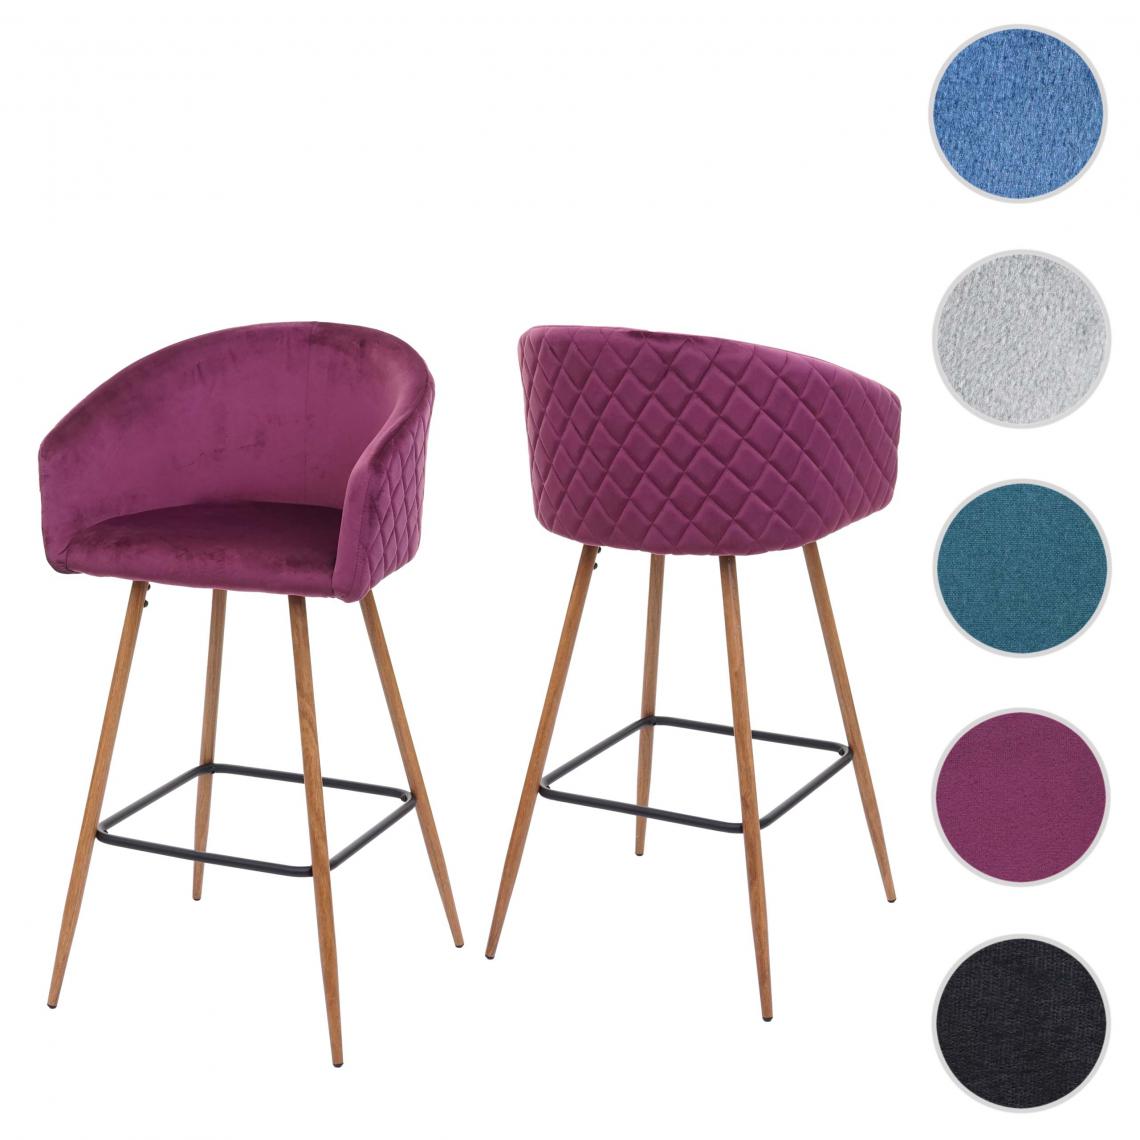 Mendler - 2x tabouret de bar HWC-D72, chaise bar/comptoir, avec dossier, tissu ~ velours, couleur rouge-bordeaux - Tabourets